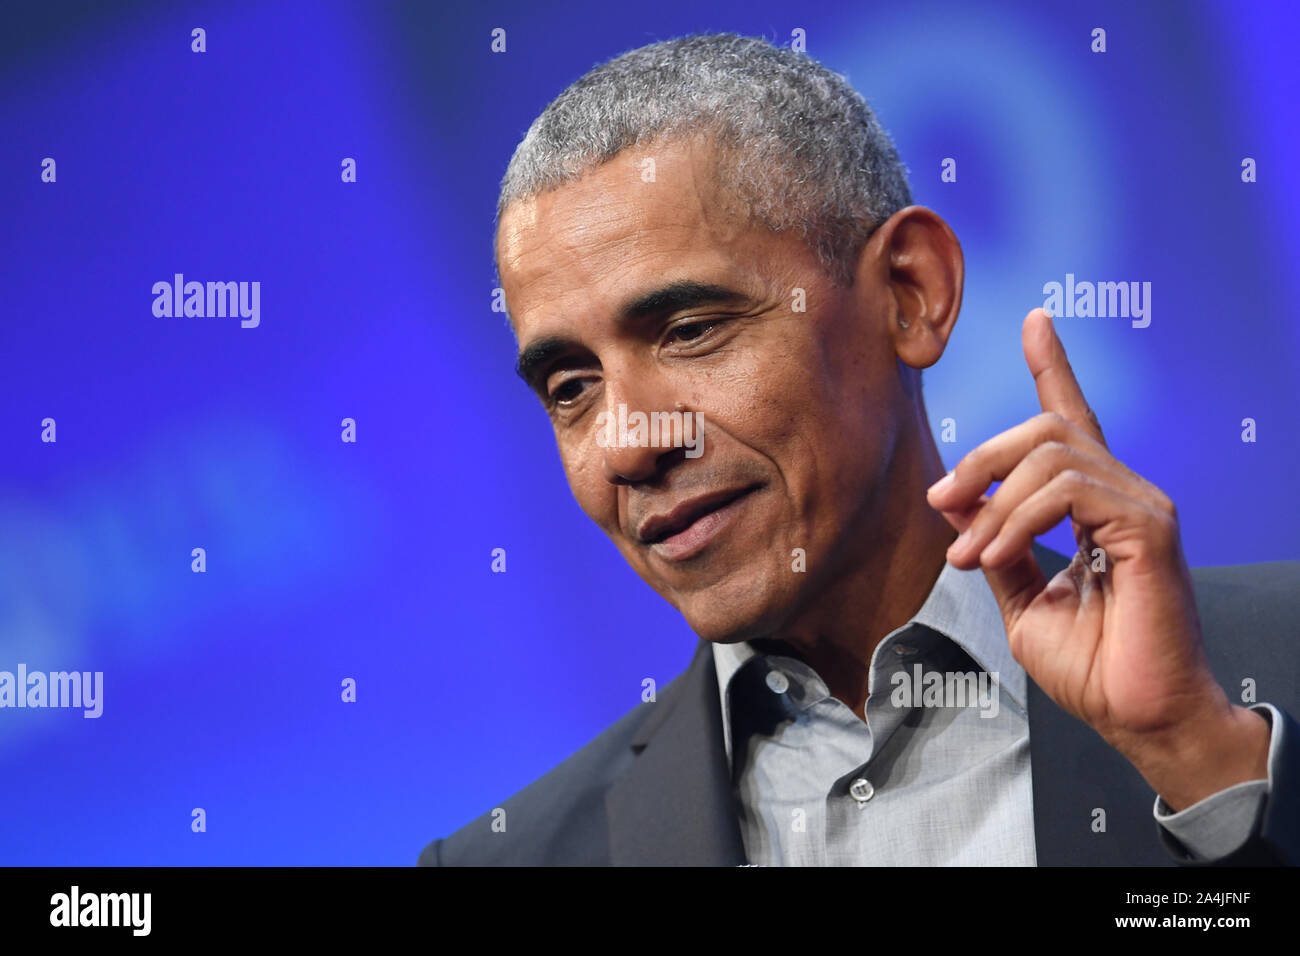 Munich, Allemagne. Sep 29, 2019. L'ancien président américain Barack Obama va parler au 29.09.2019 à la conférence fondateurs "Bits & Pretzels" à Munich. Crédit : Andreas Gebert | utilisée dans le monde entier/dpa/Alamy Live News Banque D'Images